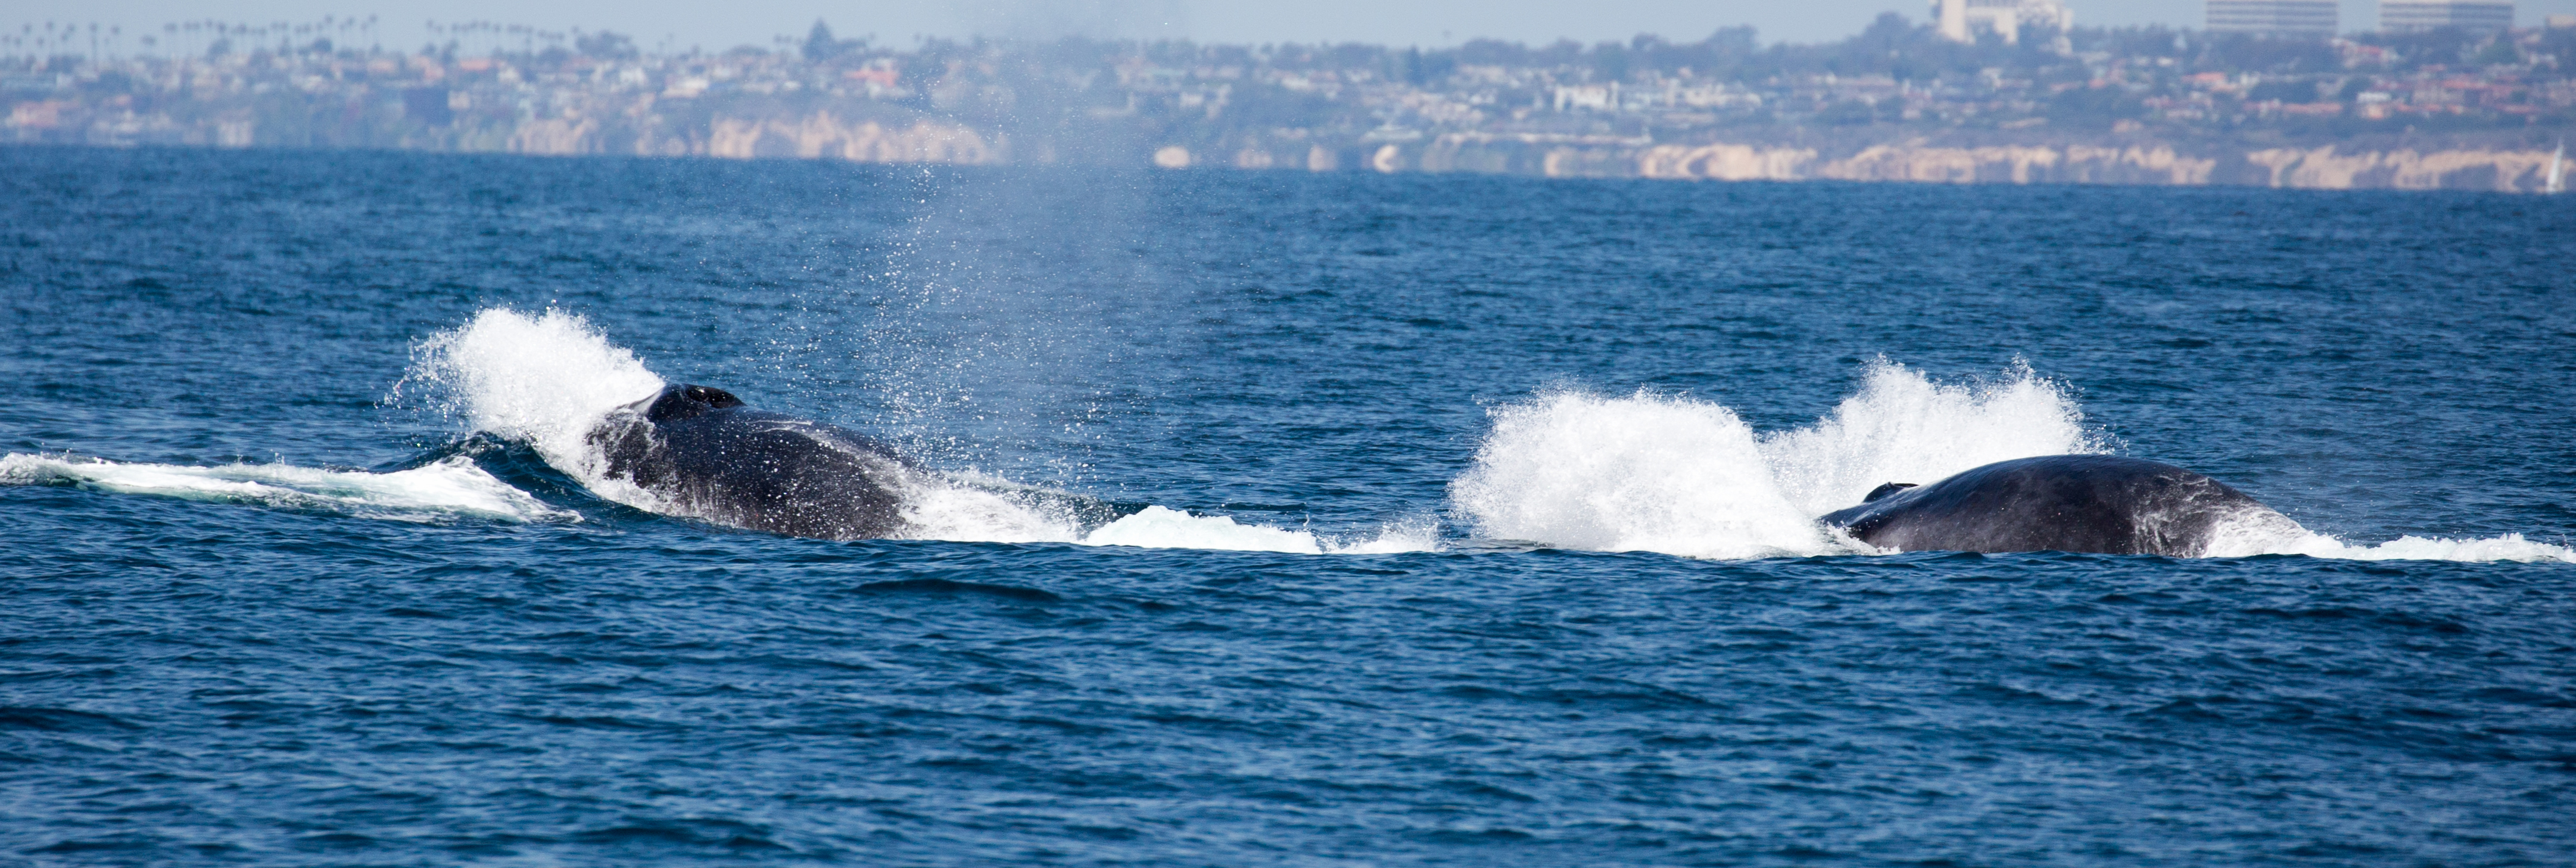 finback-whale-watching-Santa-Barbara-tours